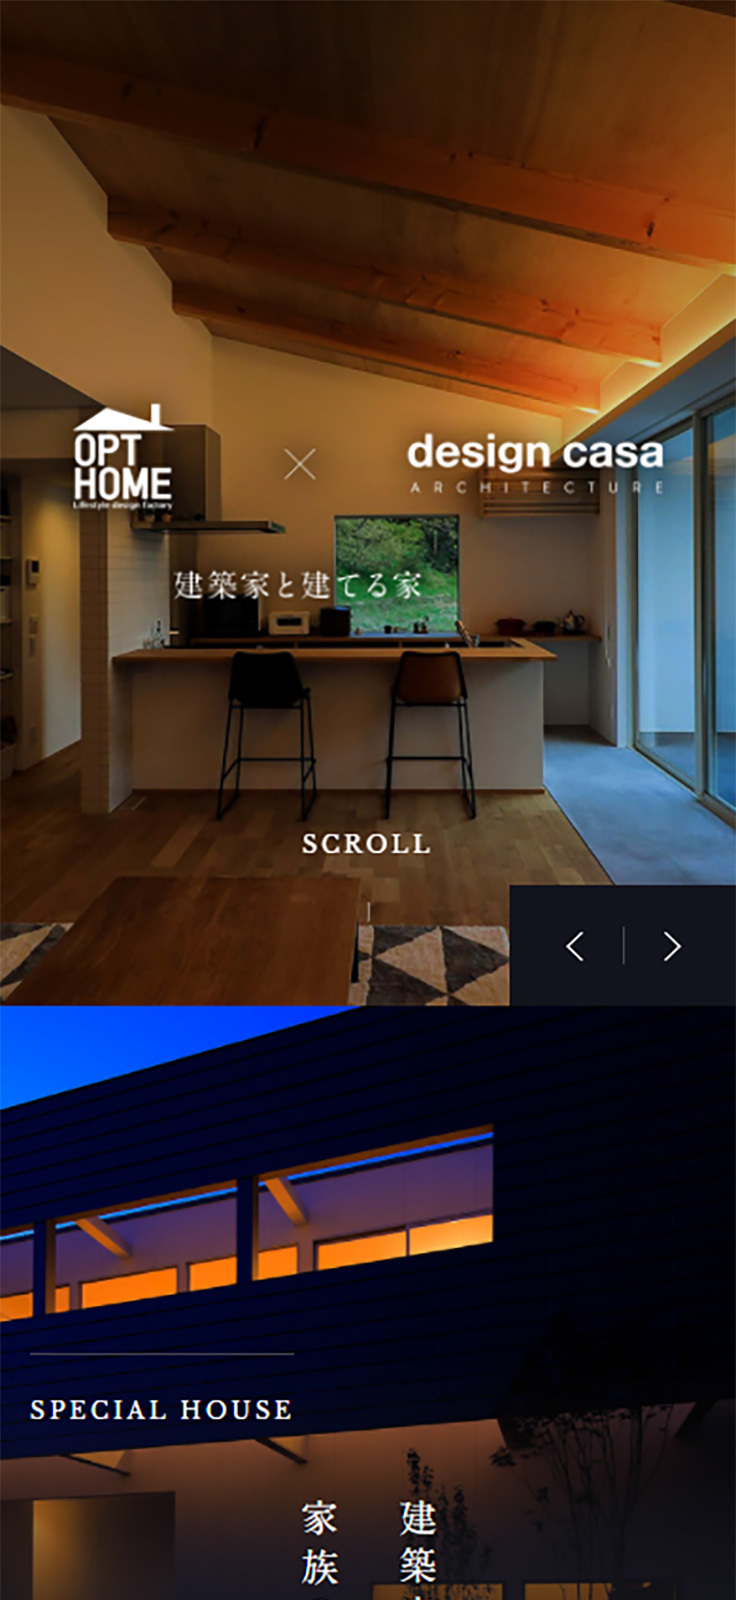 OPT HOME × design casa 様